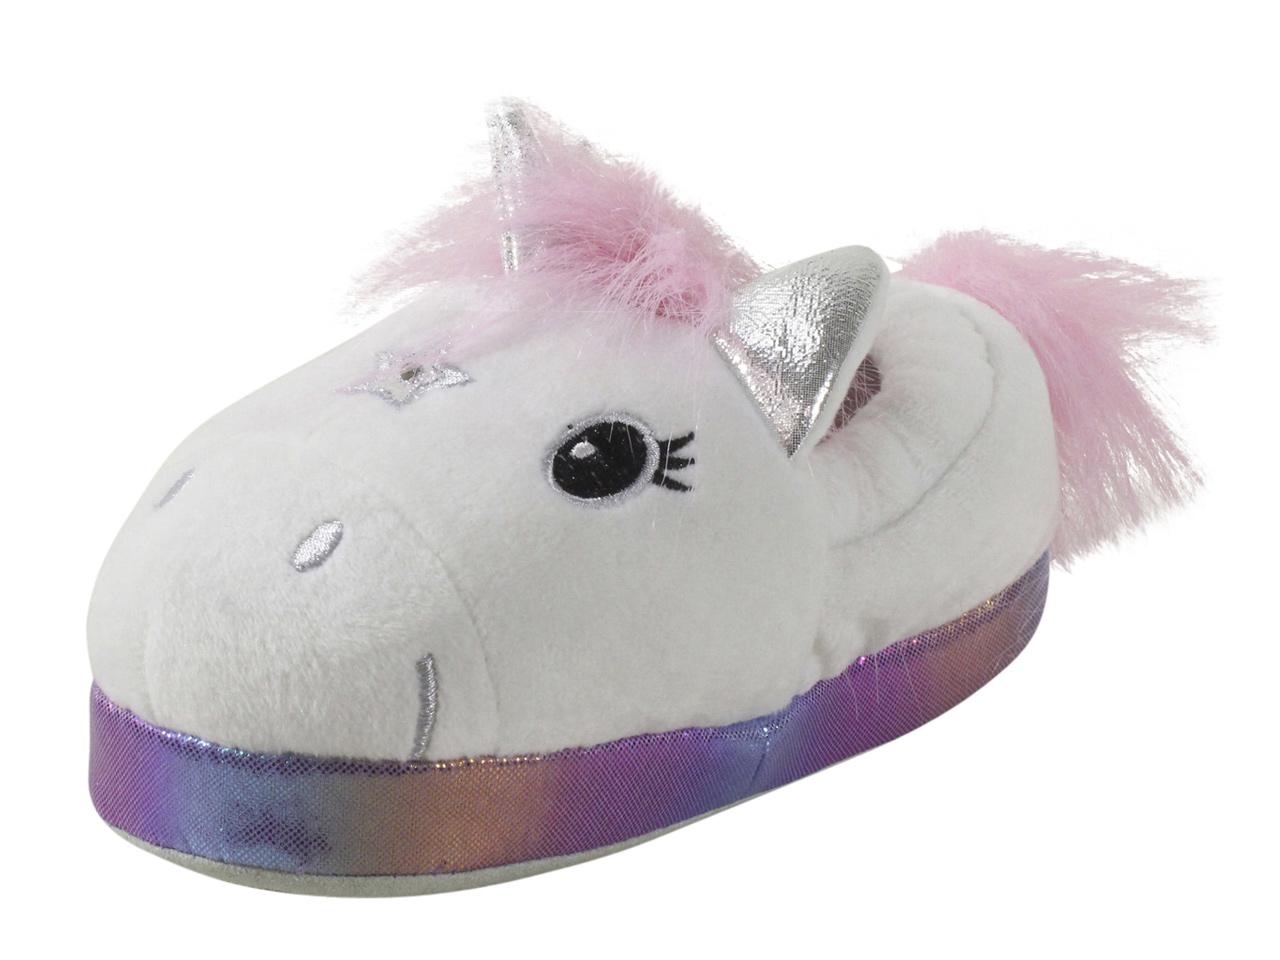 unicorn light up shoes